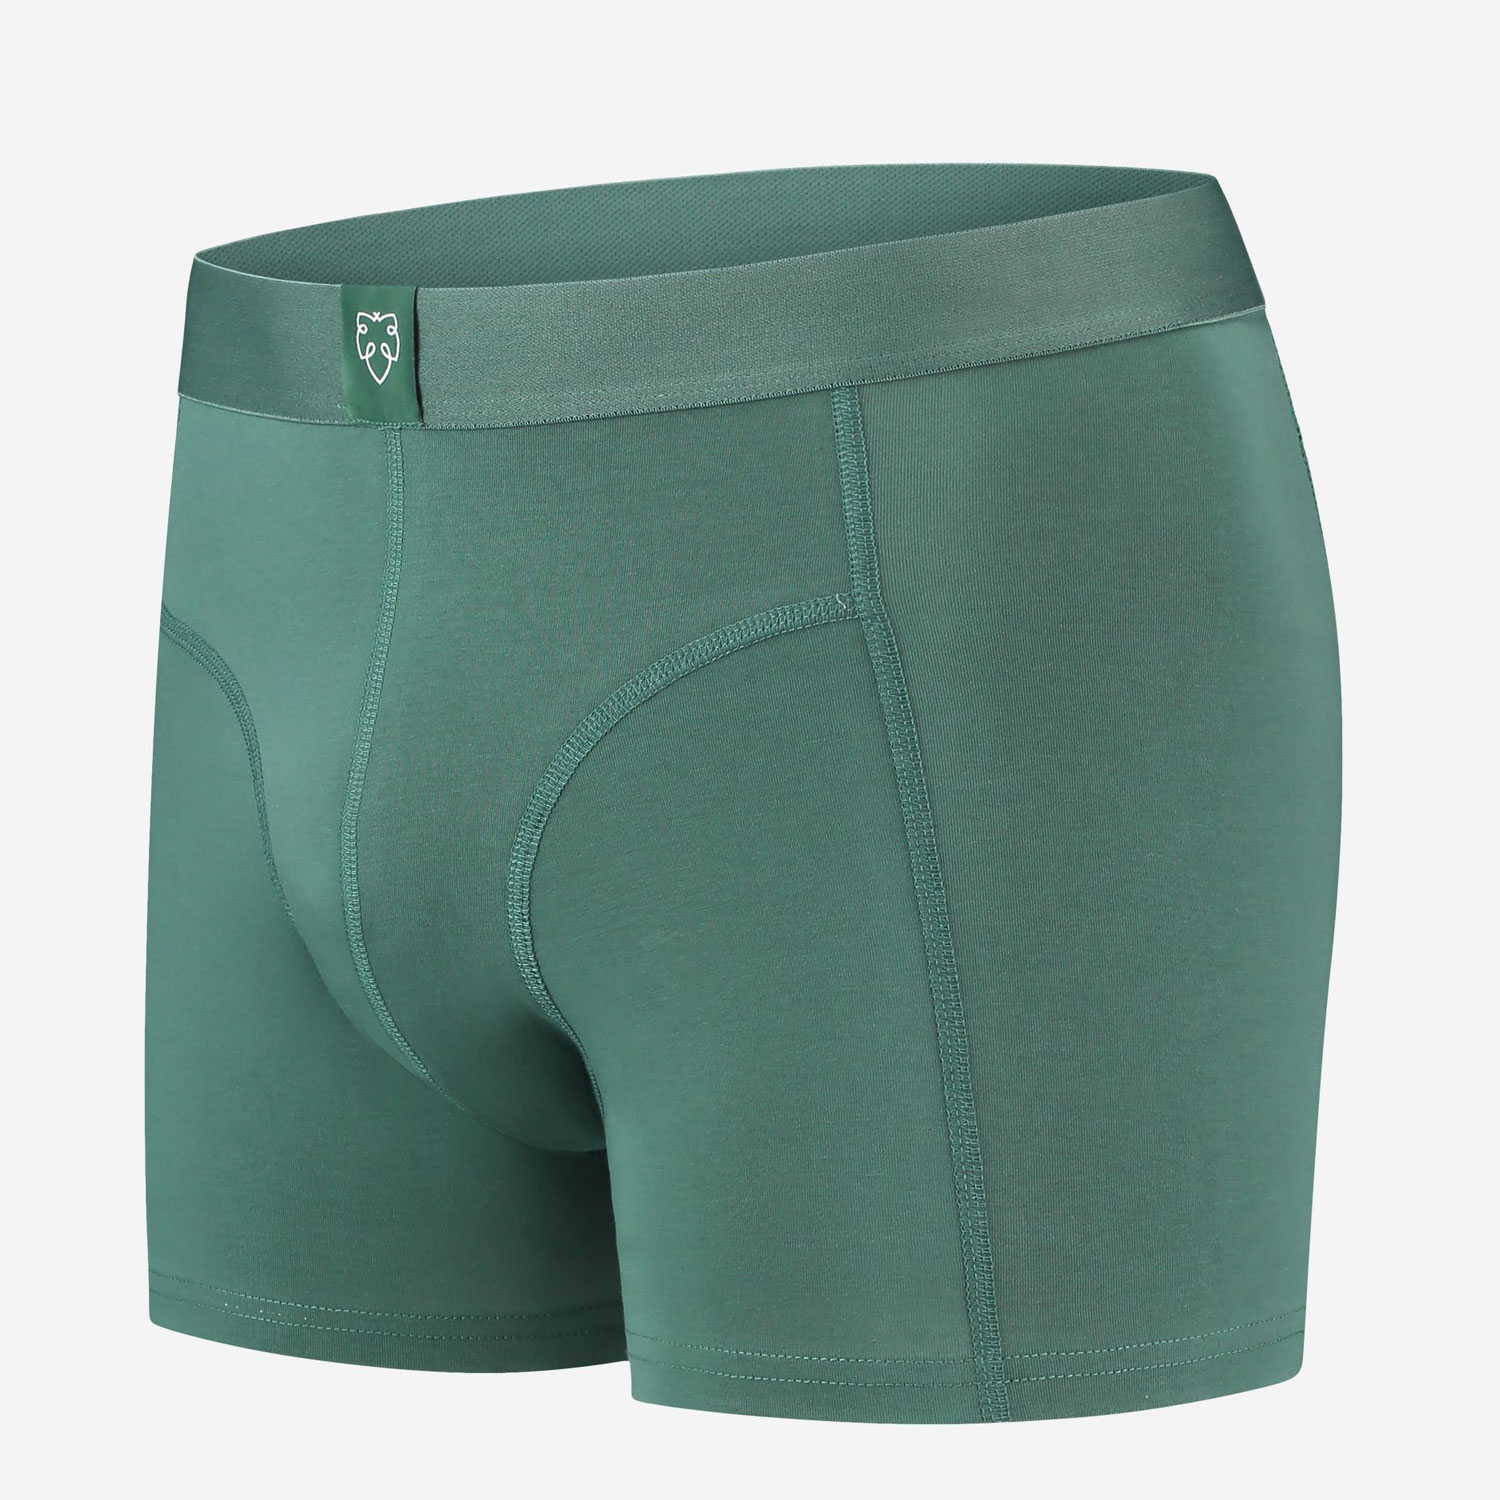 grüne Retropants von A-dam Underwear aus Bio-Baumwolle und Econyl